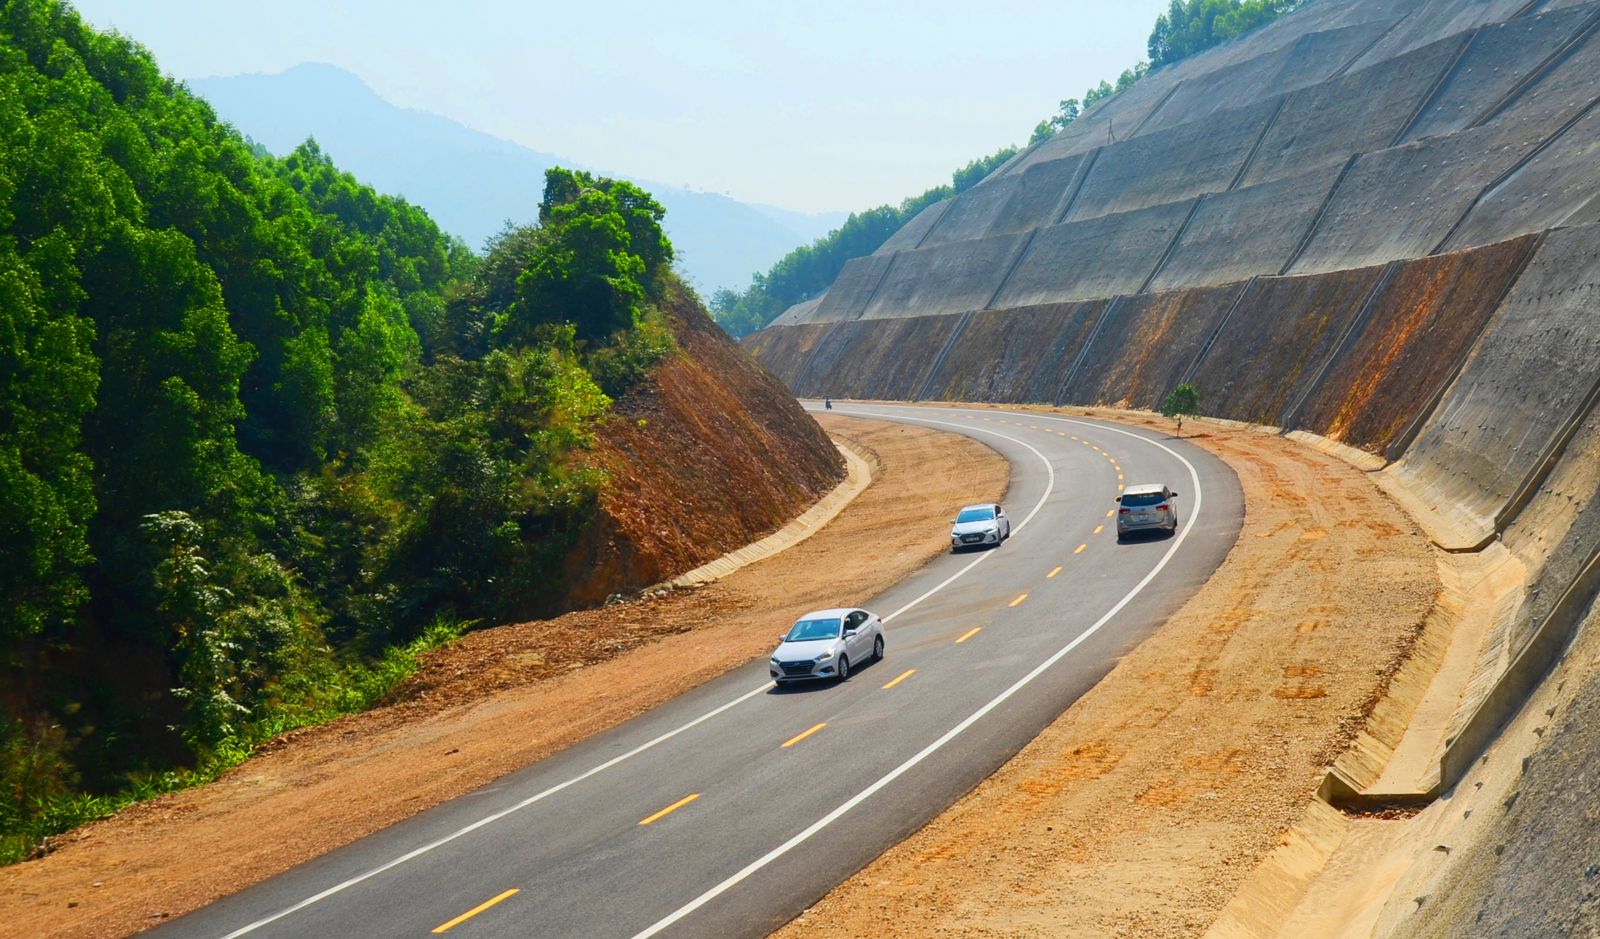 Dự án PPP cao tốc Bắc - Nam sẽ kết nối miền Bắc và Nam Việt Nam với những tuyến đường mới mang lại người dân nhiều lợi ích và hứa hẹn sẽ mở ra nhiều cơ hội cho các doanh nghiệp. Hãy cùng khám phá những hình ảnh độc đáo của dự án này.